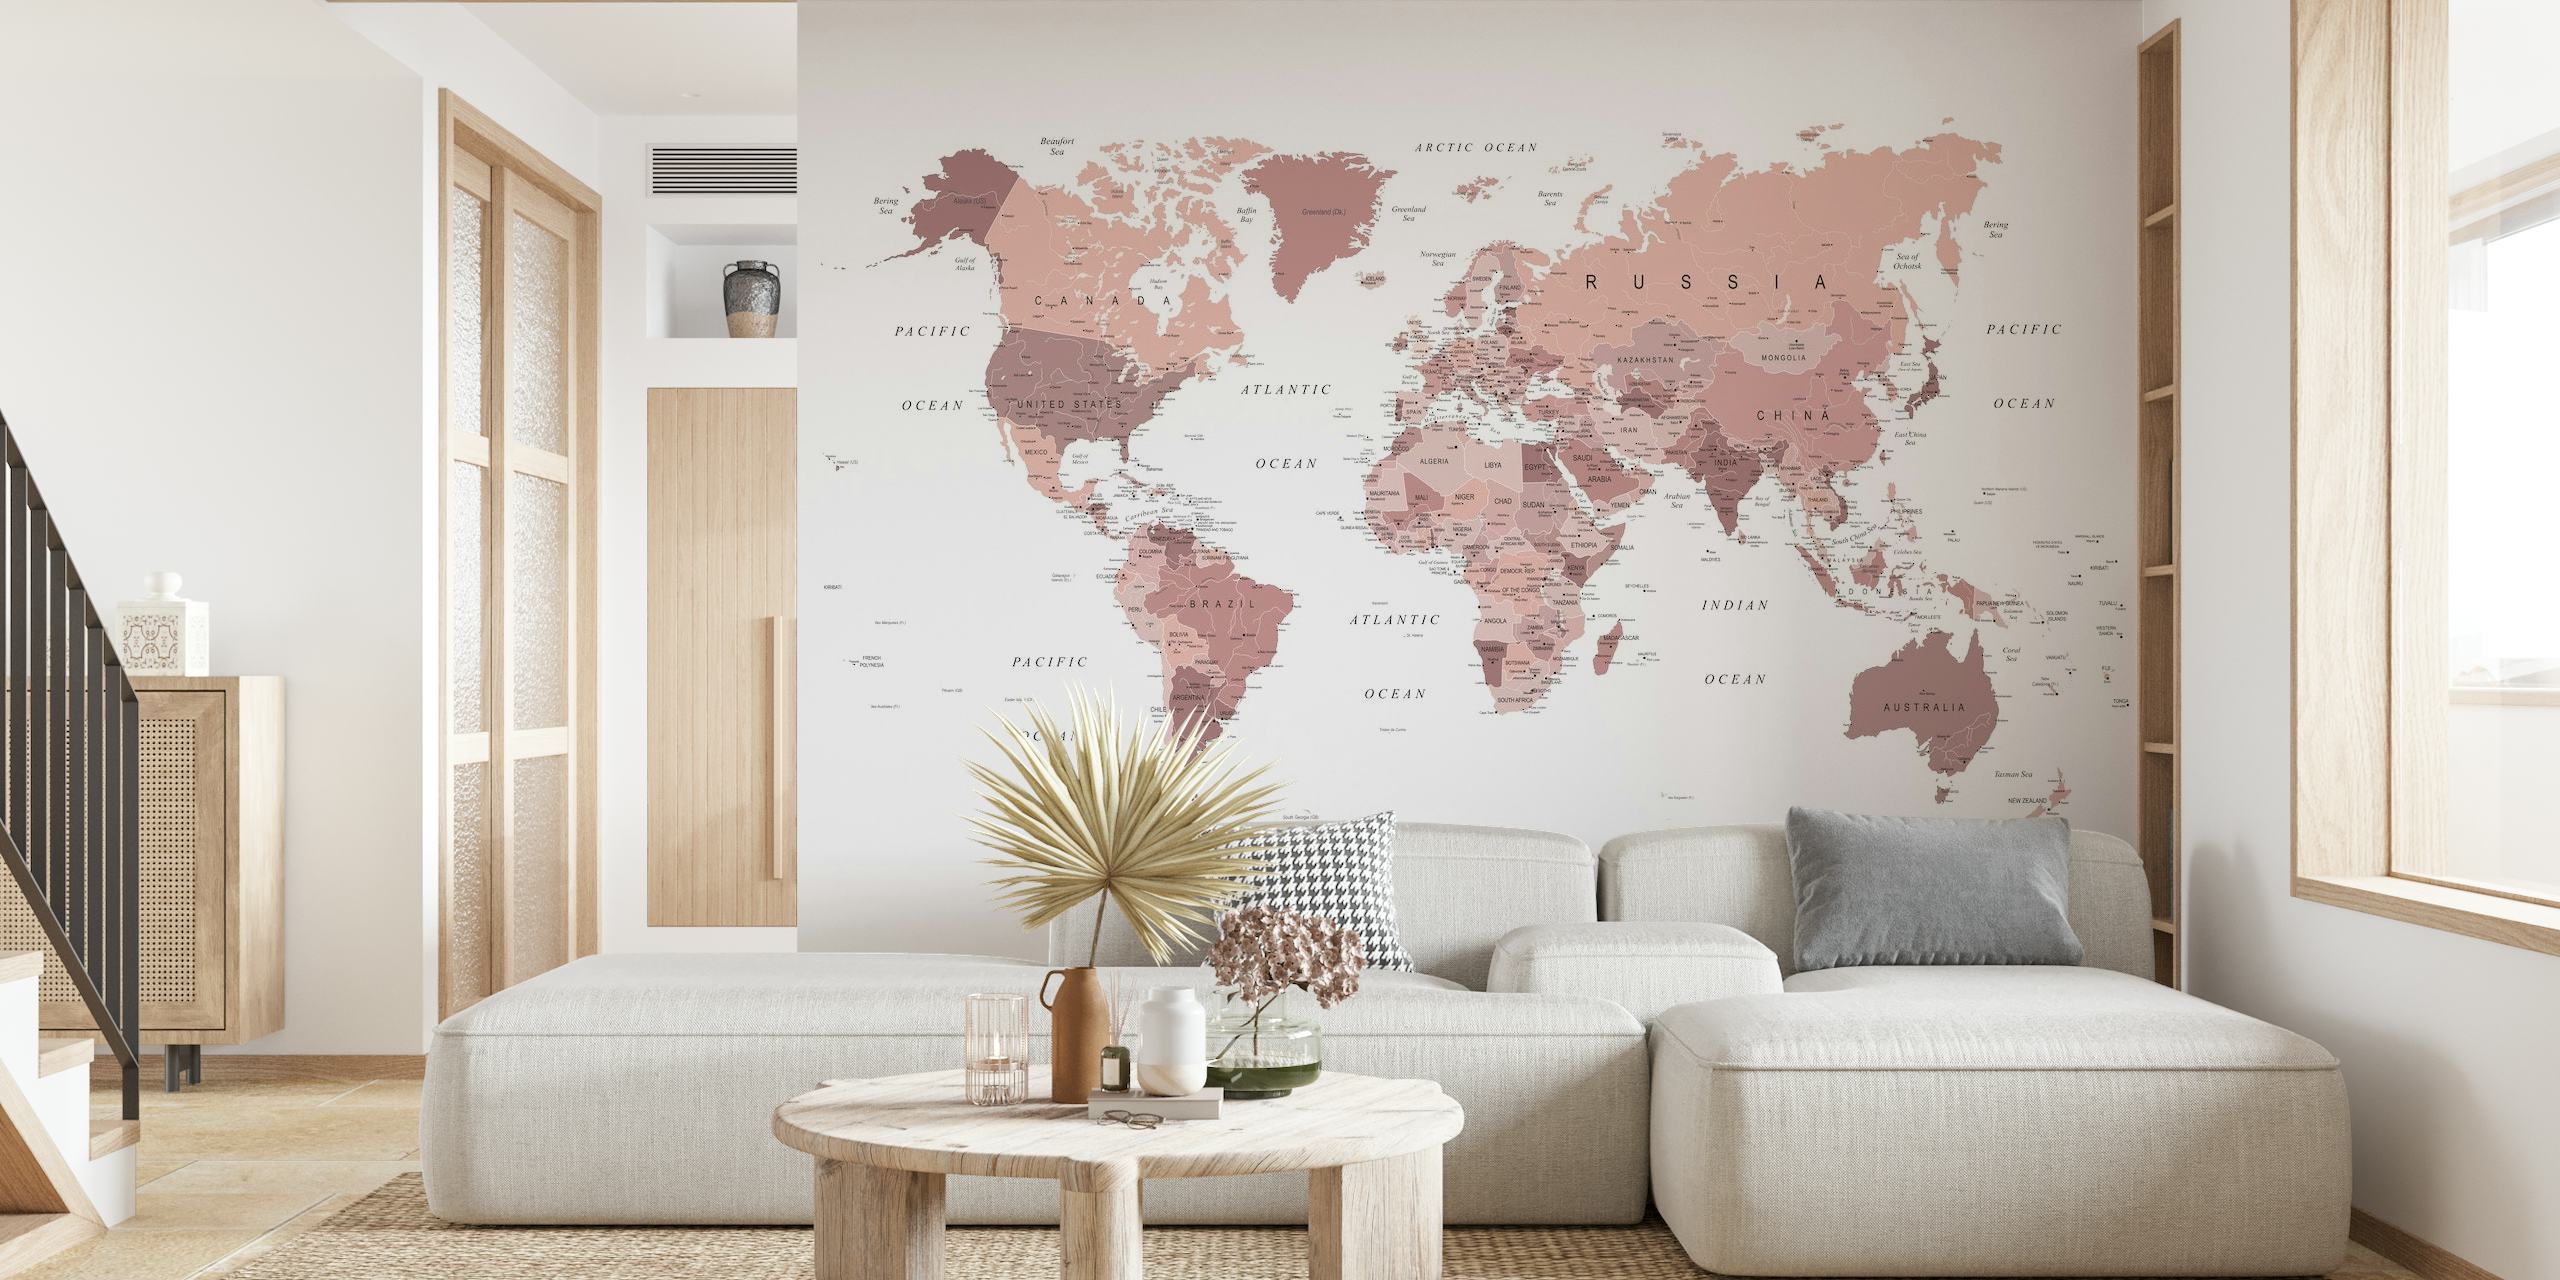 Fototapeta mapa světa z růžového zlata v jemné barevné paletě